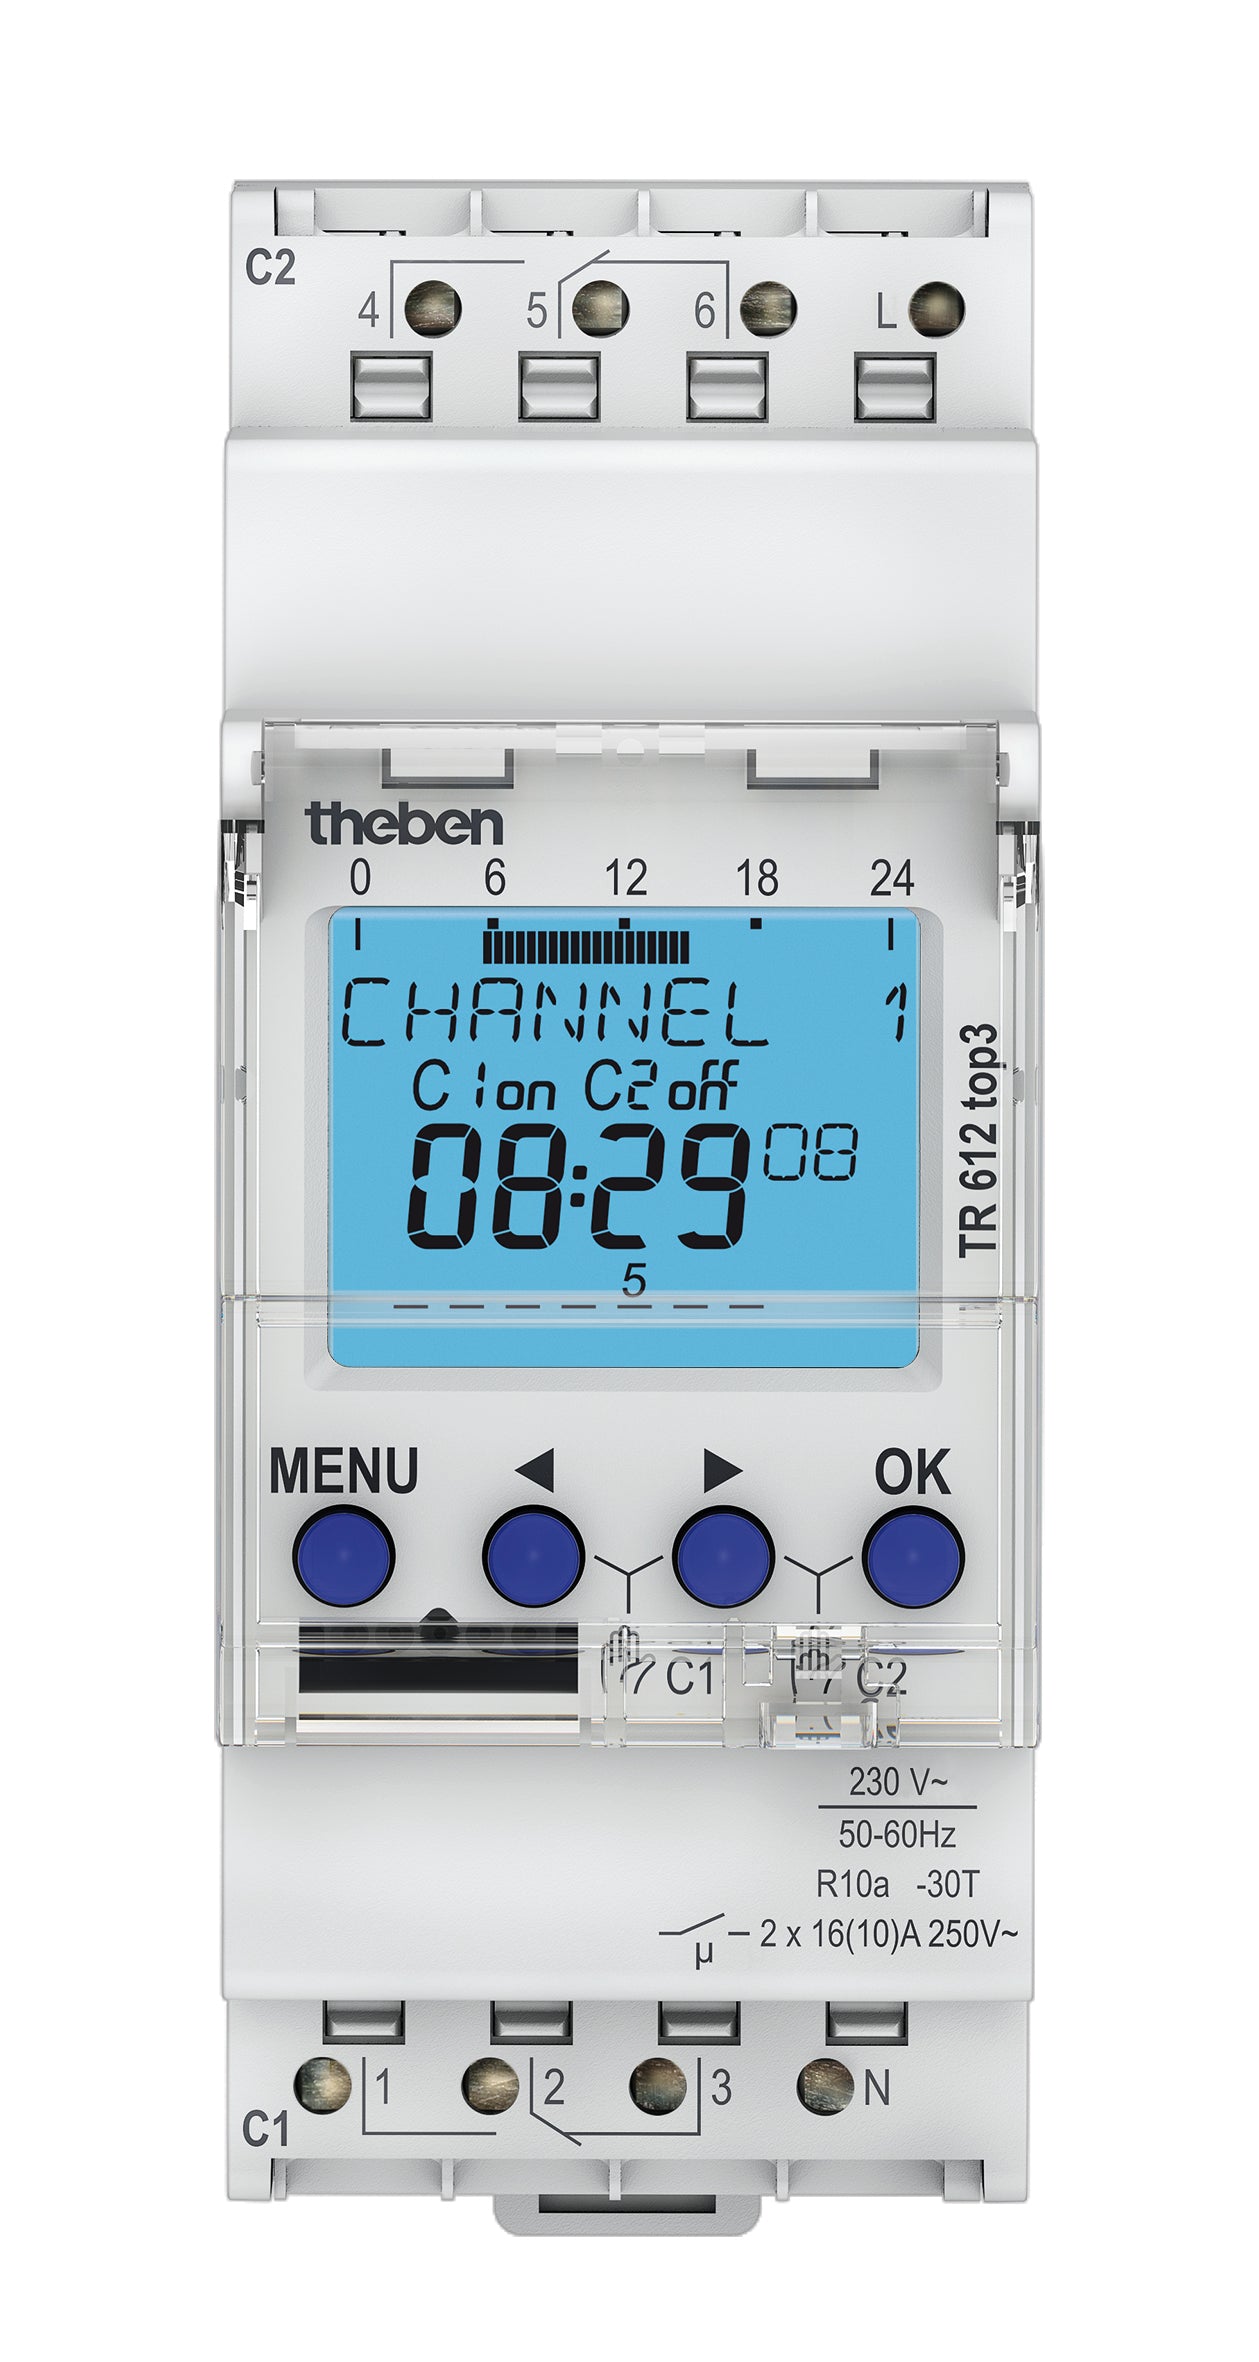 Digitale Zeitschaltuhr mit Wochenprogramm, TR 612 top3, von Theben. Maximale Manipulationssicherheit, Zeitschaltprogramme können nur dann von der App in die Uhr übertragen werden, wenn der Bluetooth OBELISK top3 in der Uhr steckt.